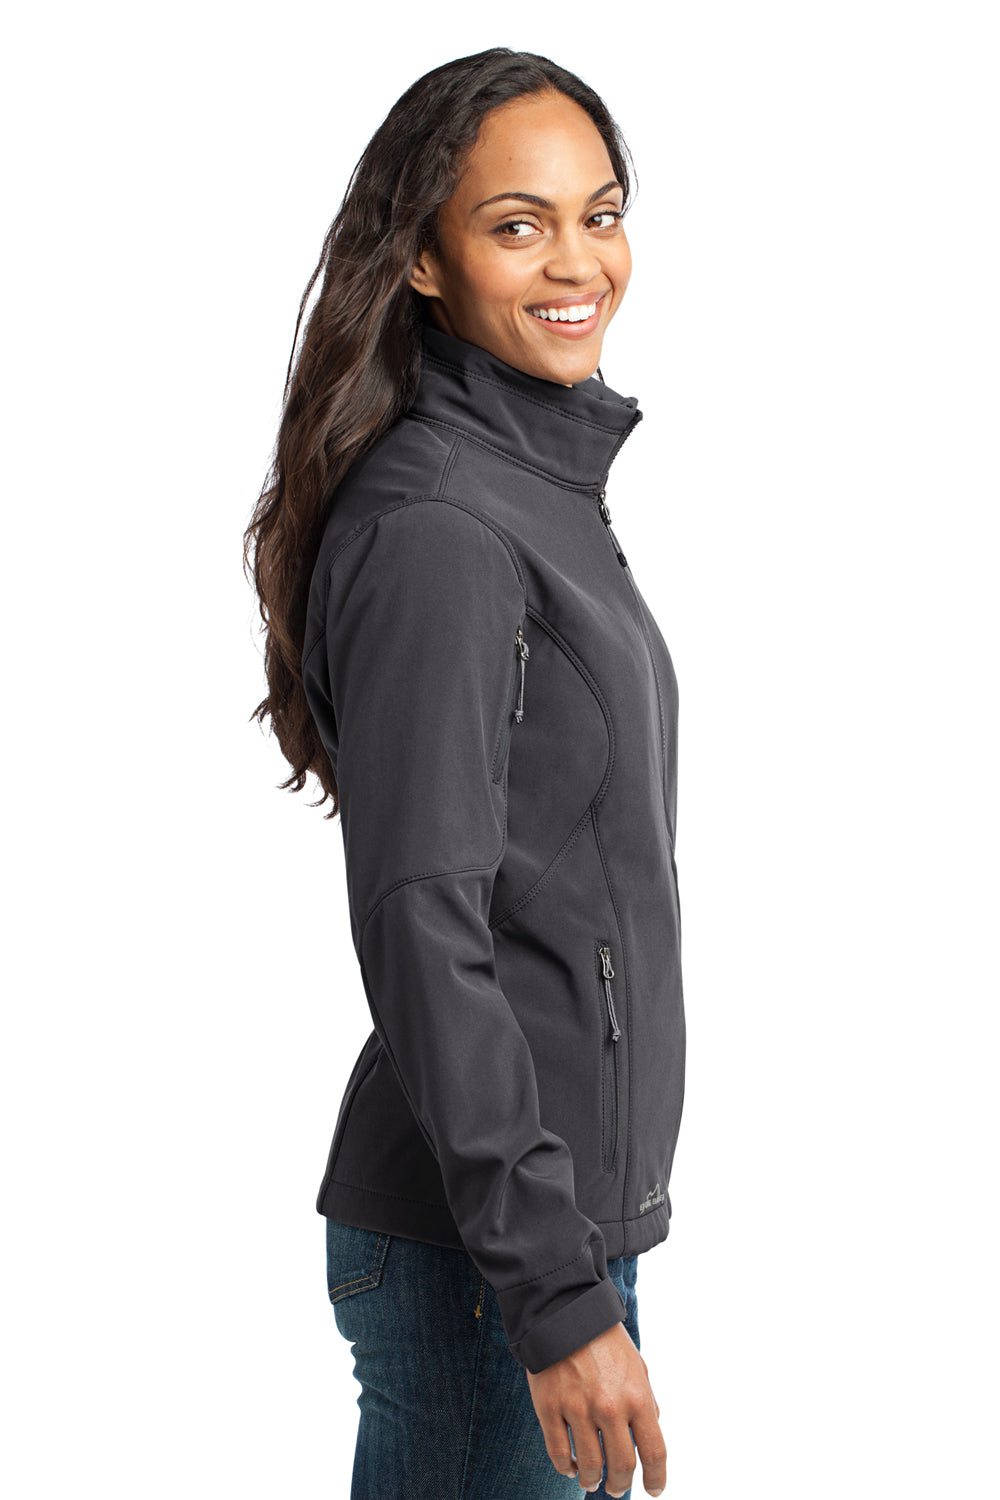 Eddie Bauer EB531 Womens Water Resistant Full Zip Jacket Steel Grey Model Side